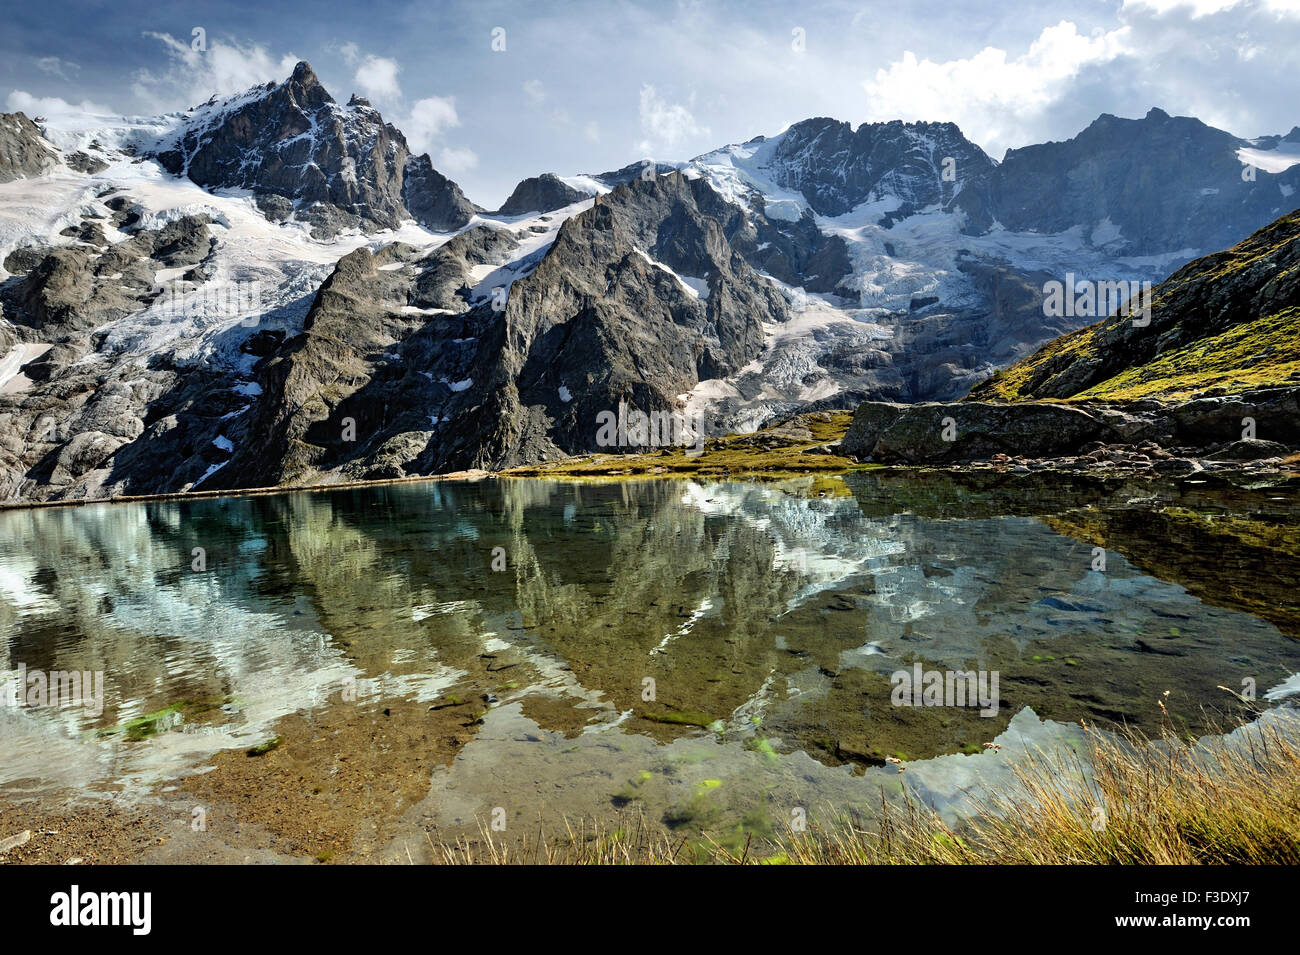 Panoramablick auf die Gletscher von La Meije mit Reflexion in einem künstlichen See auf halbe Höhe, Französische Alpen, Frankreich Stockfoto